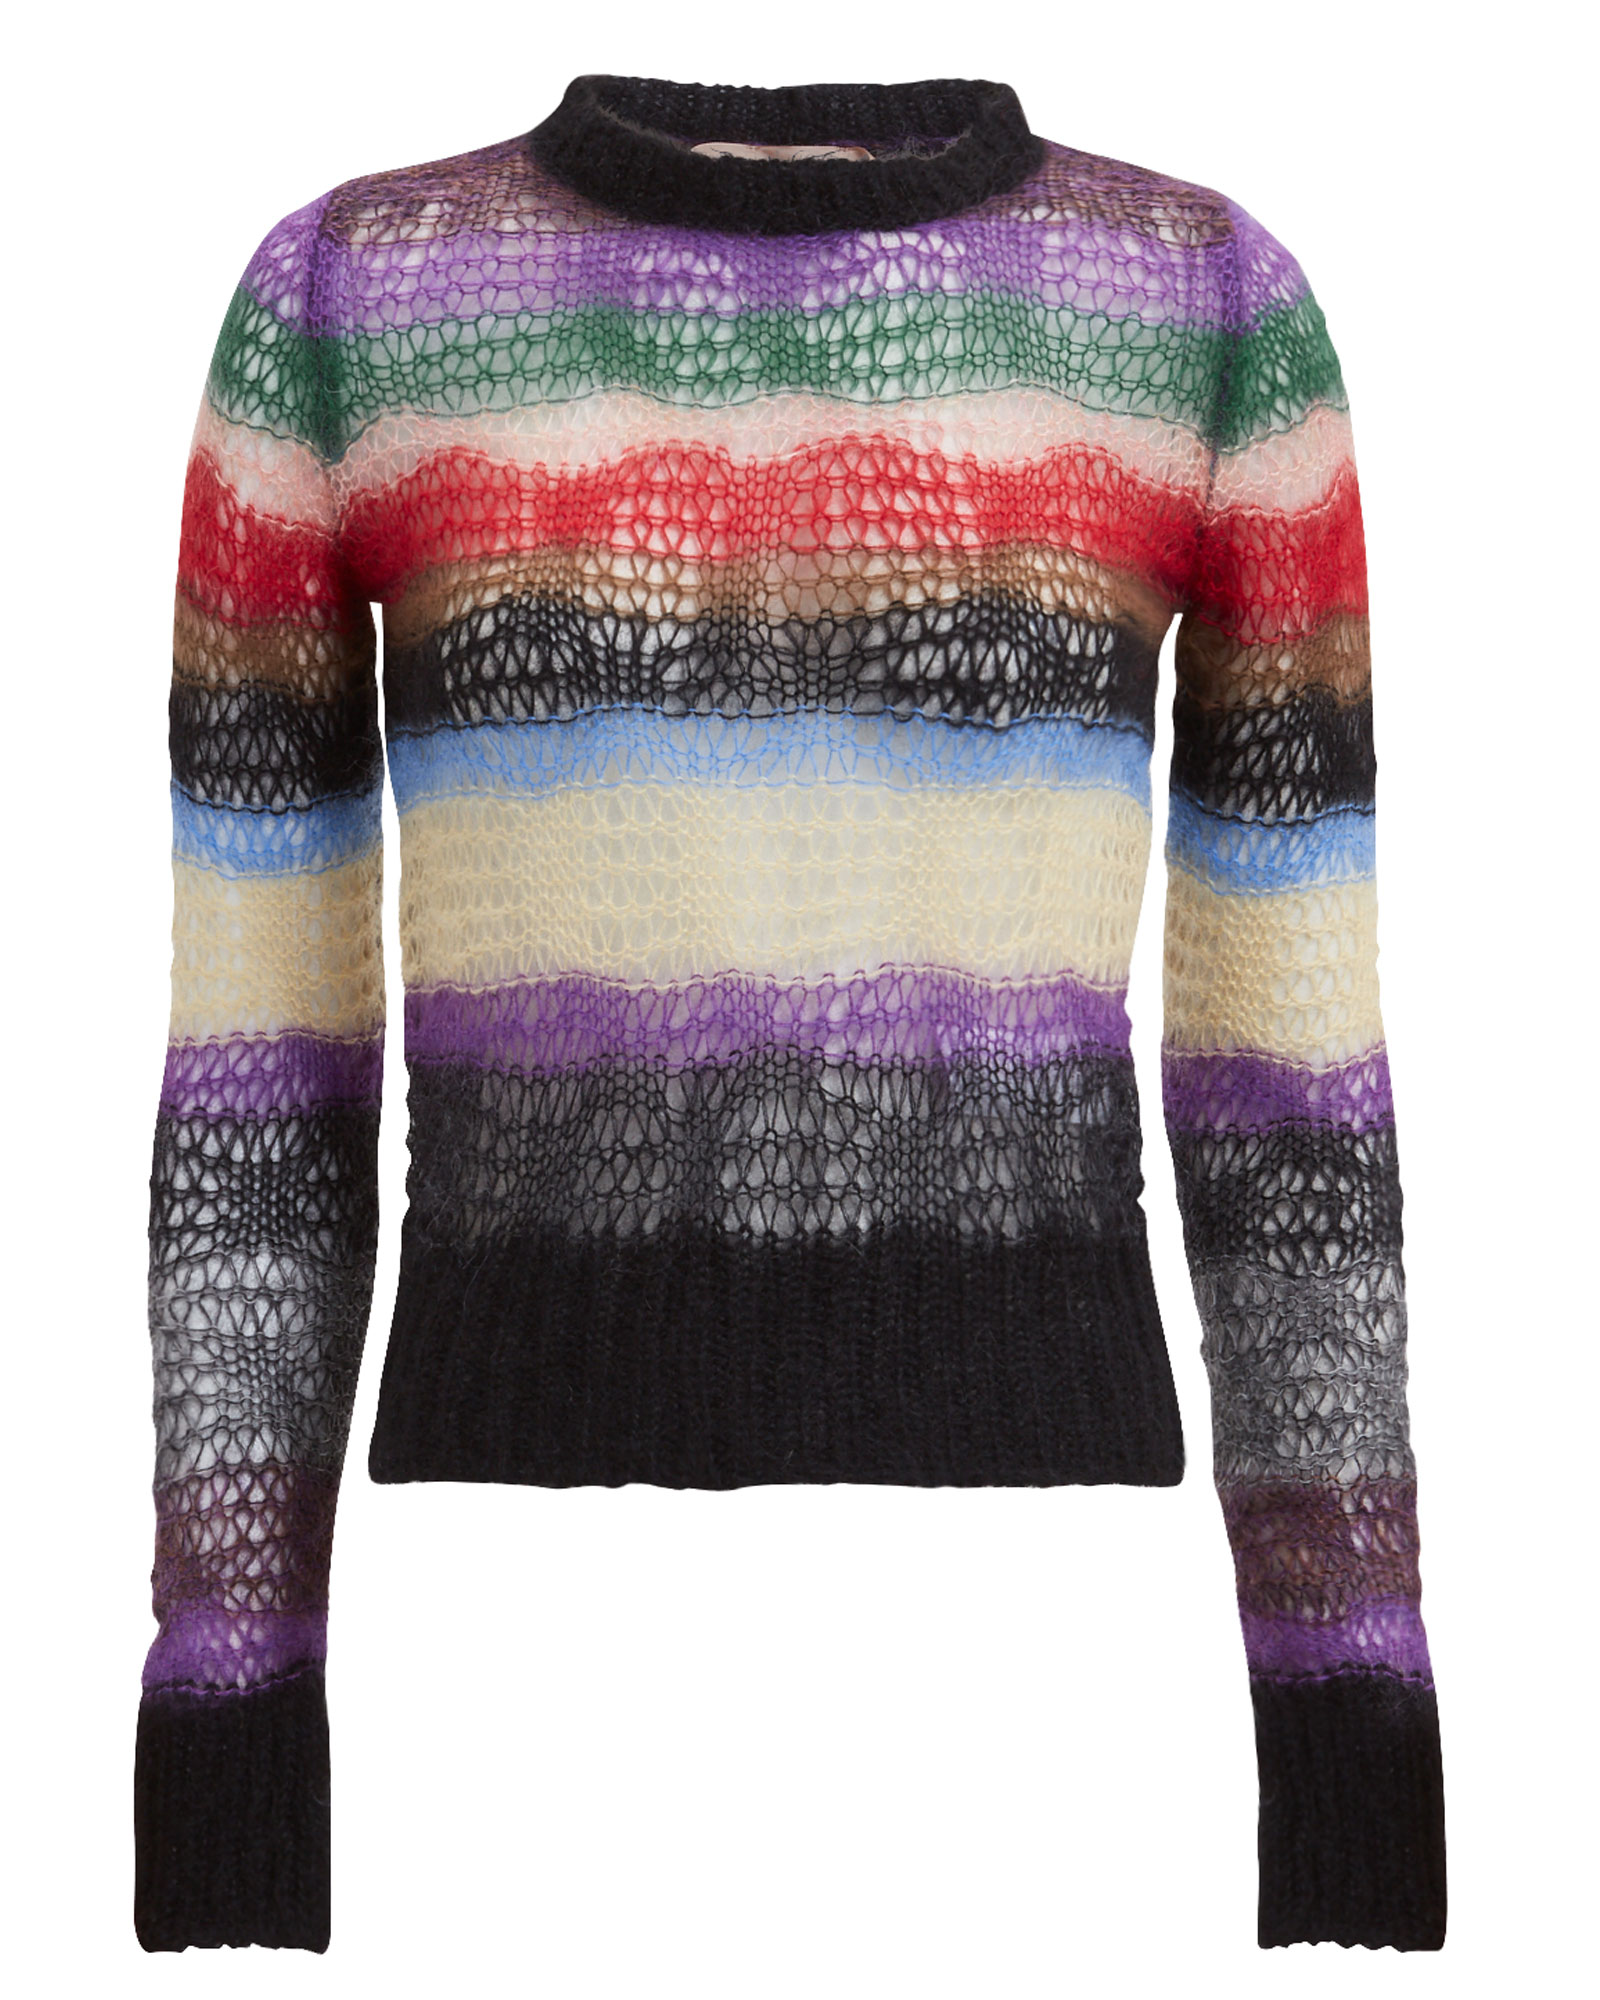 Multi-Striped Open Weave Sweater